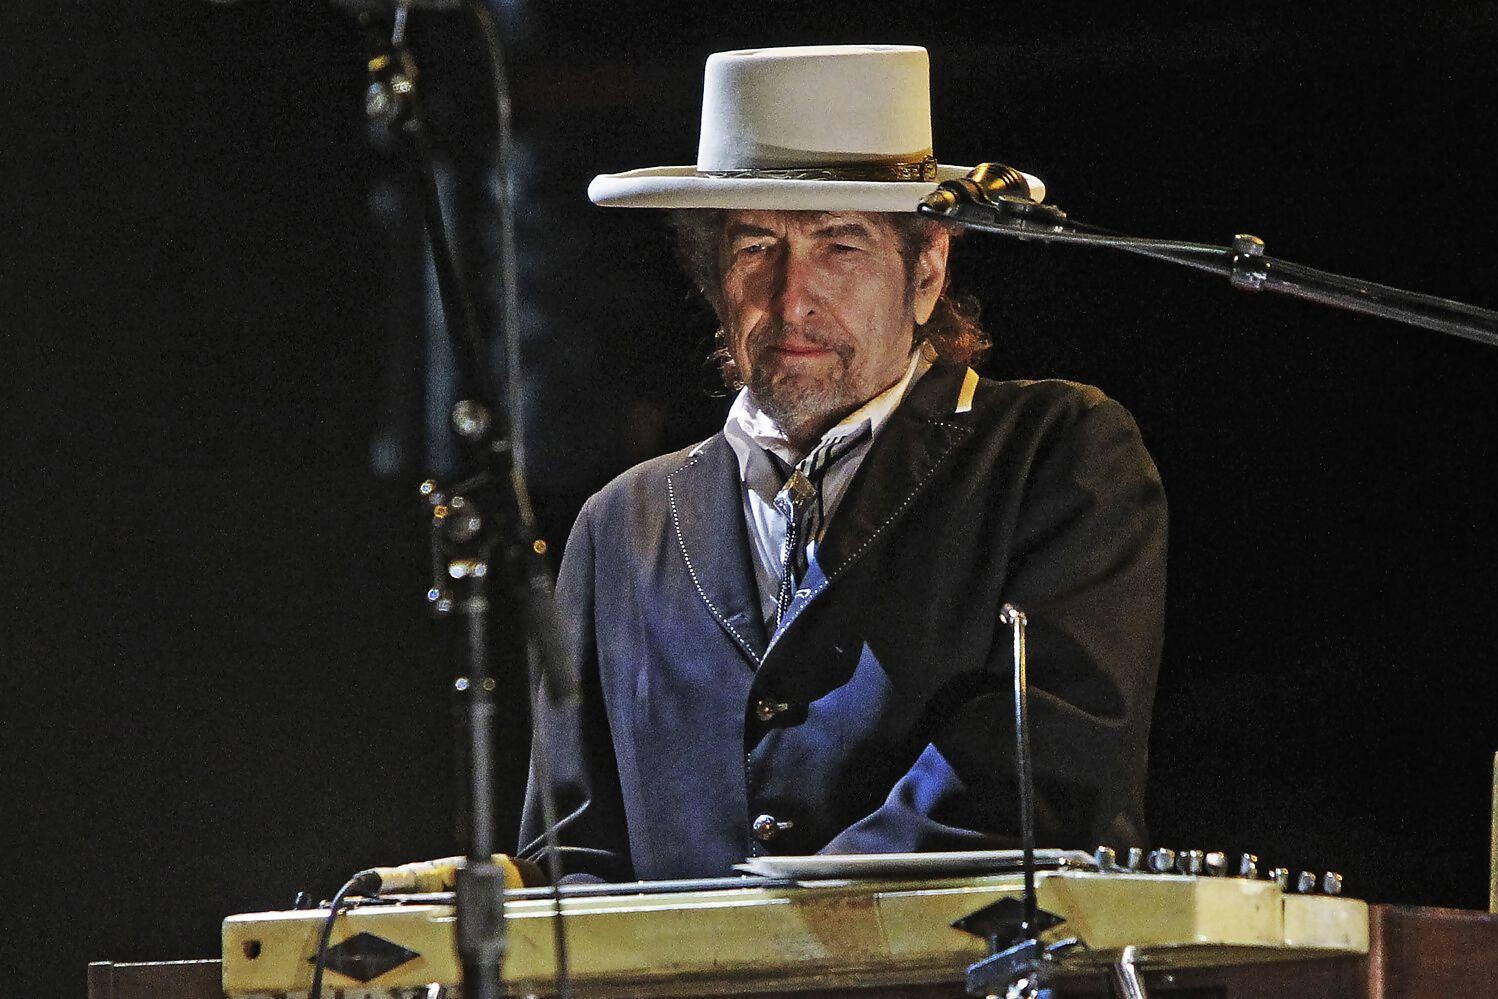 Bob Dylan playing piano at the London Palladium